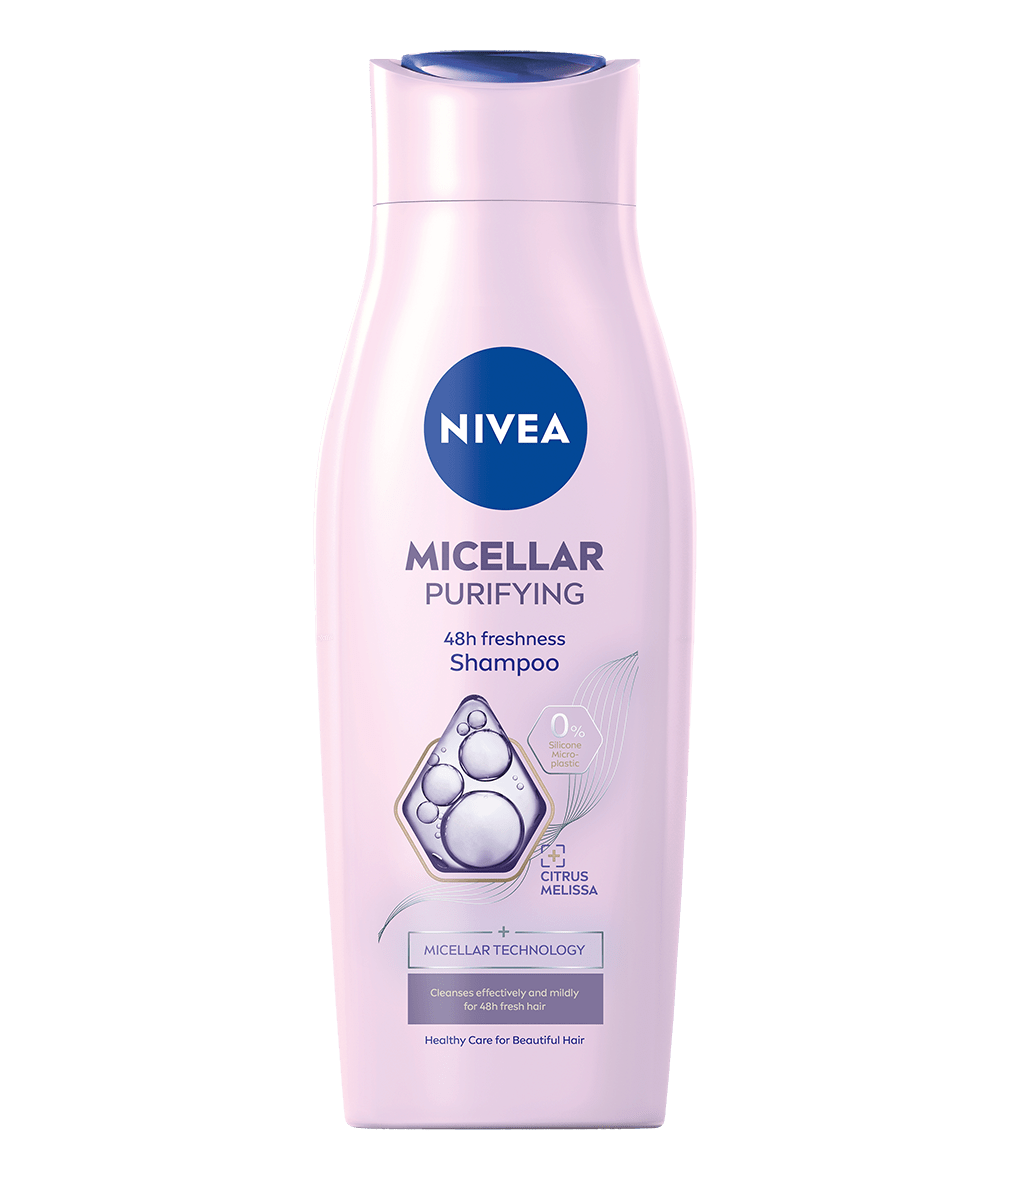 gleboko oczyszczajacy szampon micelarny nivea